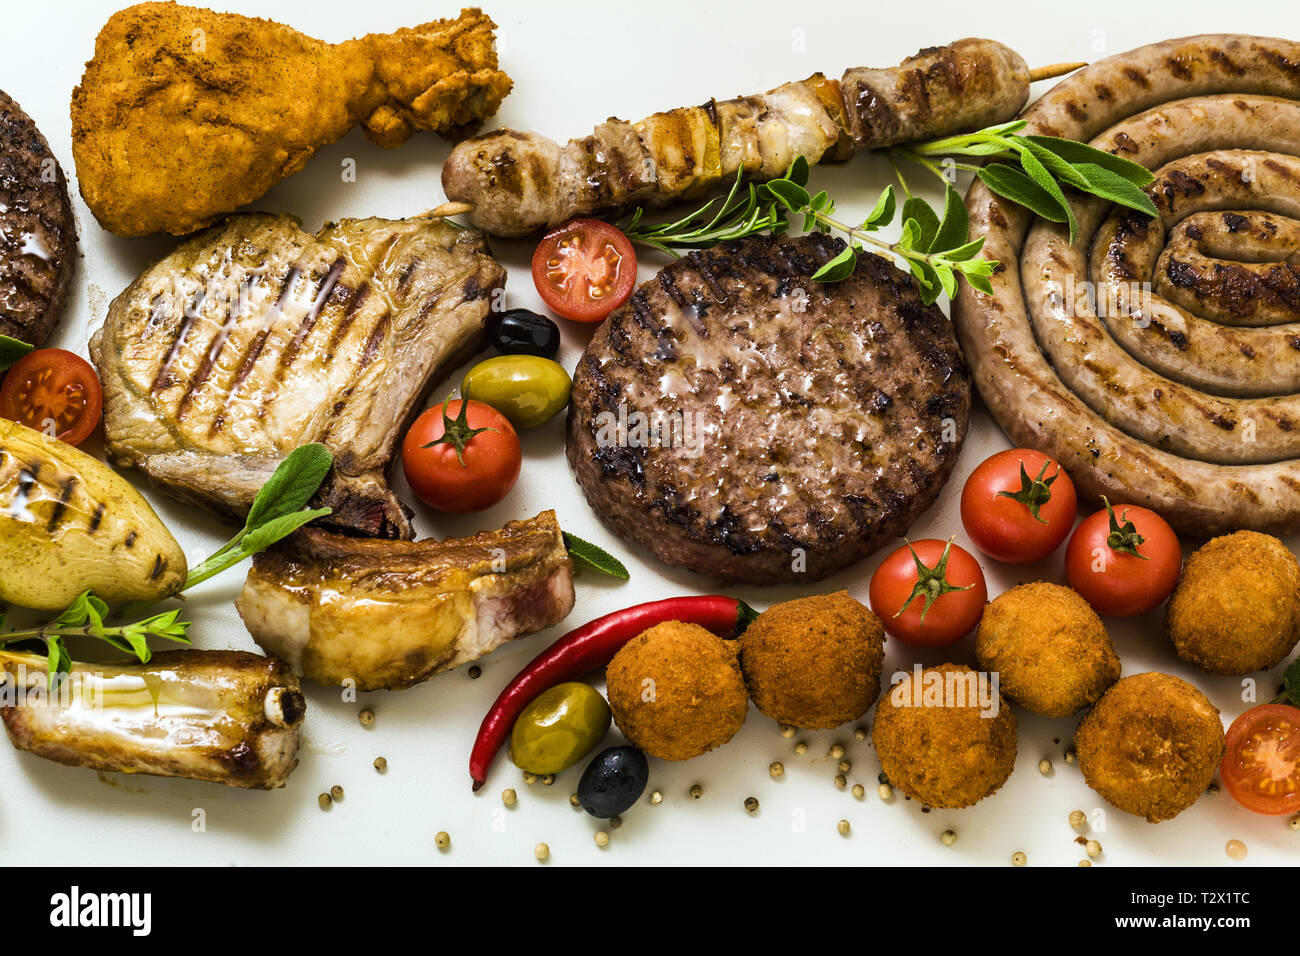 BBQ-Fleisch Party mit verschiedenen Arten von Fleisch: Rindfleisch Burger,  Schweinerippchen, Türkei Frikadellen, Hähnchen Schenkel paniert mit  Kartoffeln und Tomaten, Gewürze und Stockfotografie - Alamy